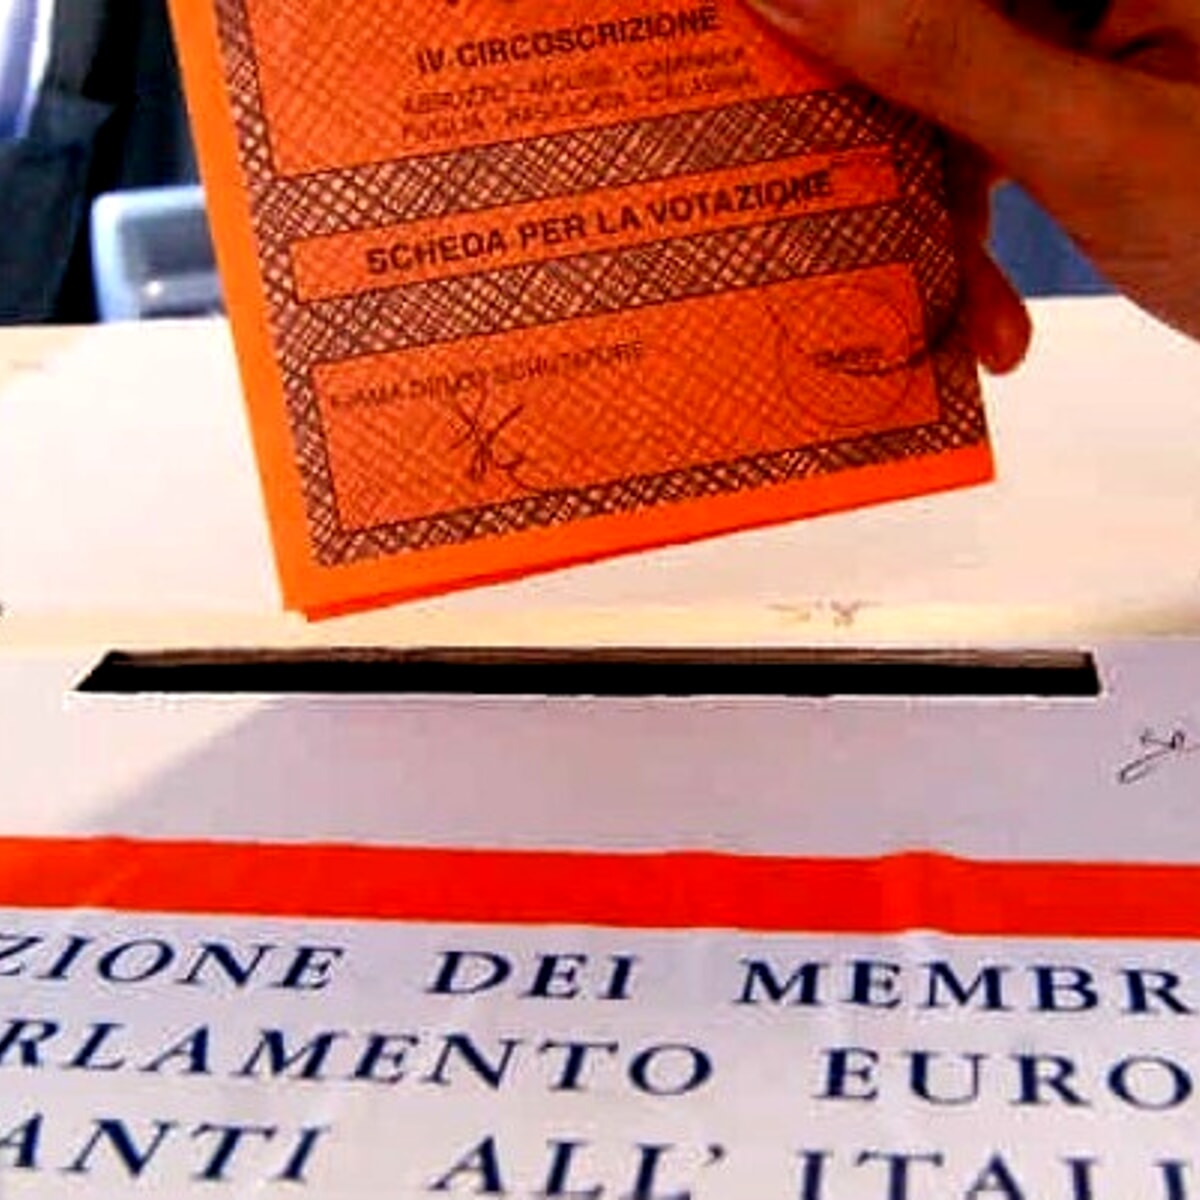 Europee: a Caserta affluenza del 46,27%, Campania terza regione per numero votanti